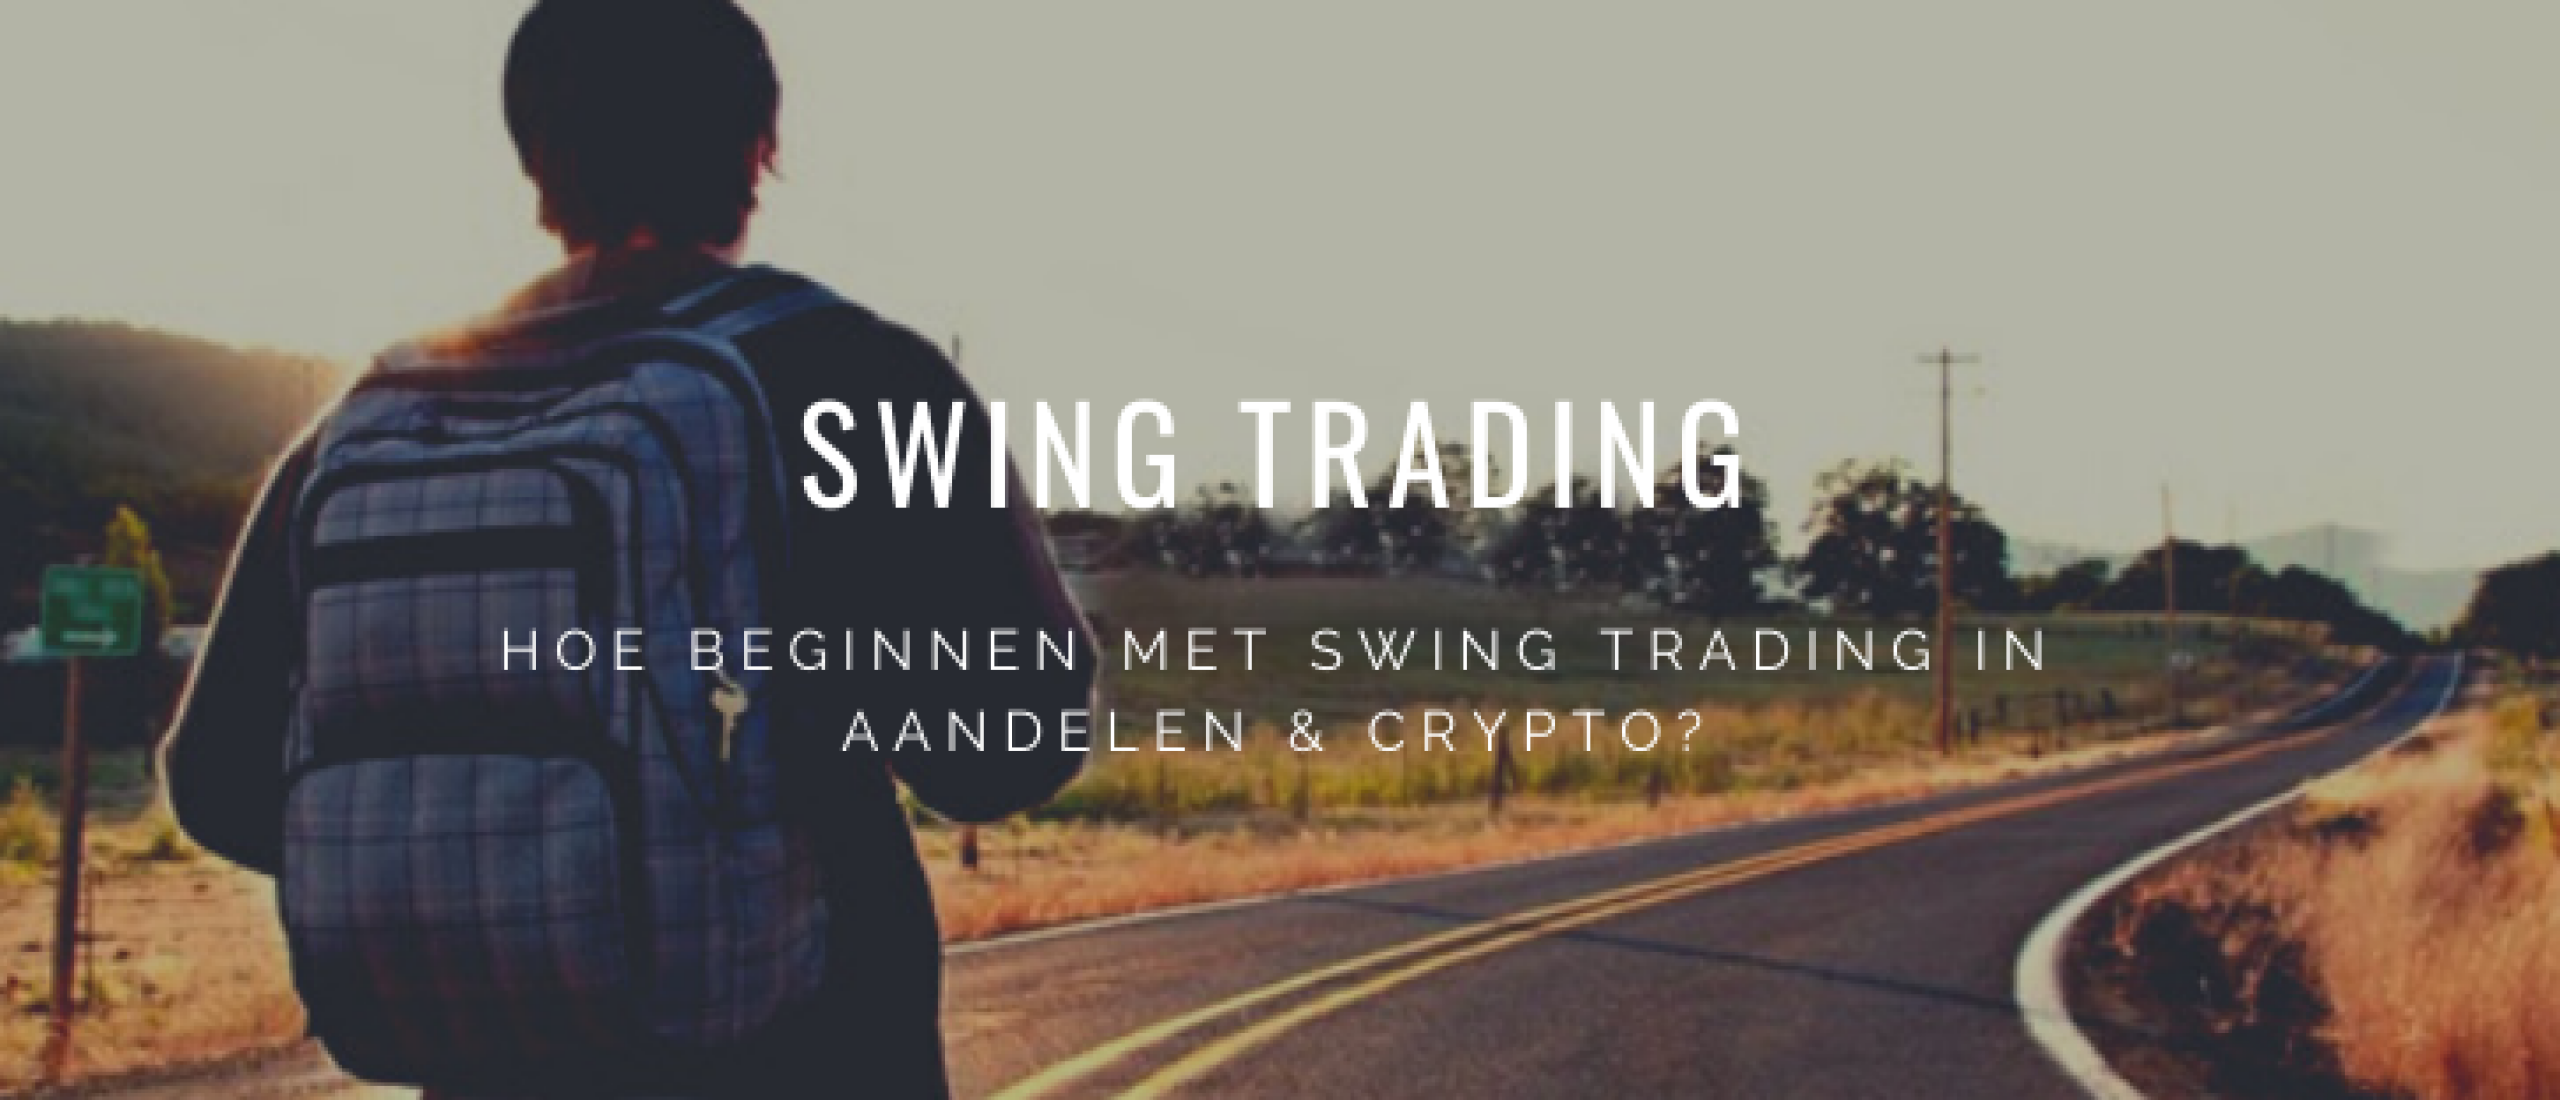 Beginnen met Swing Trading: Aandelen en Crypto